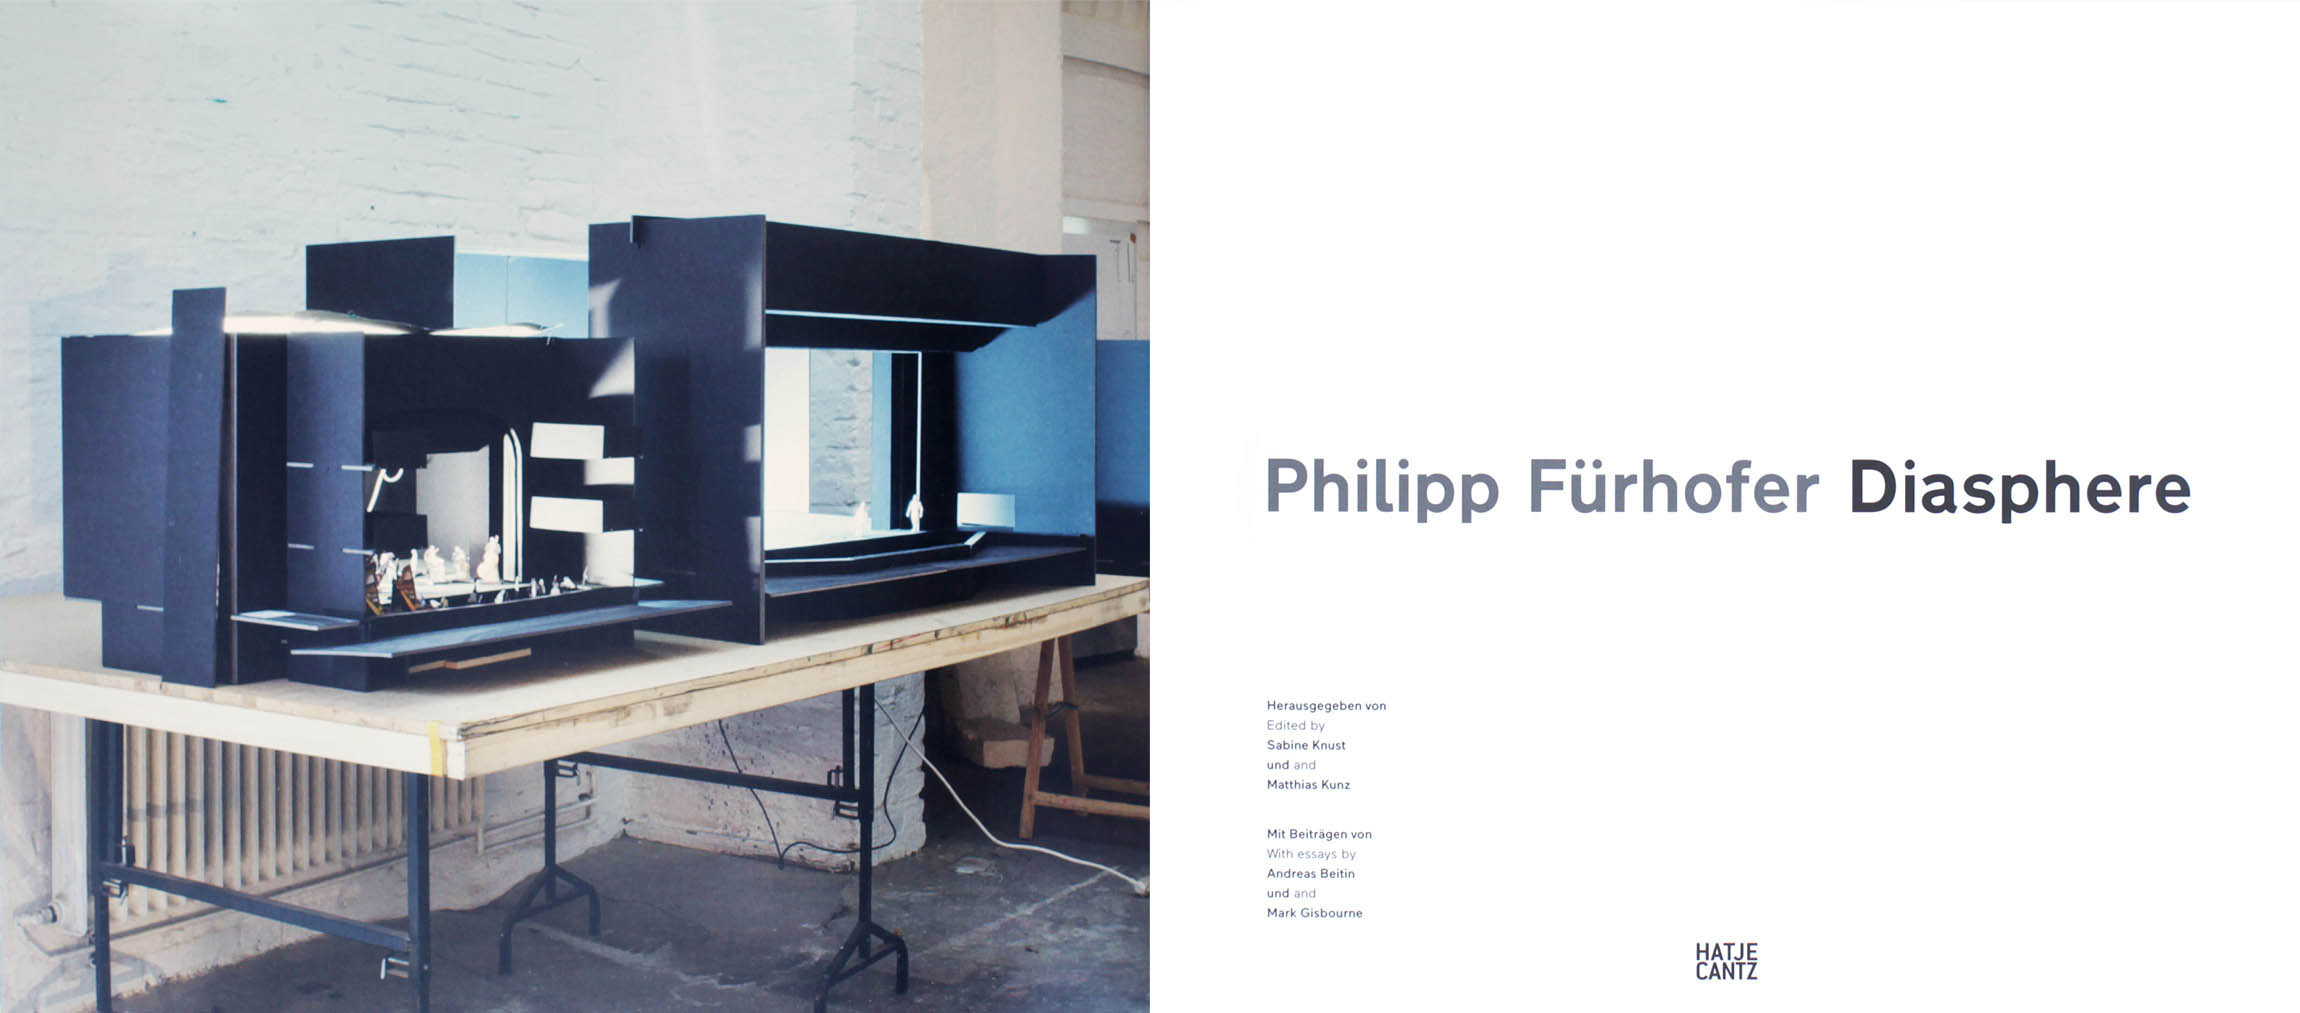 Philipp Fuerhofer Diasphere Galerie Judin